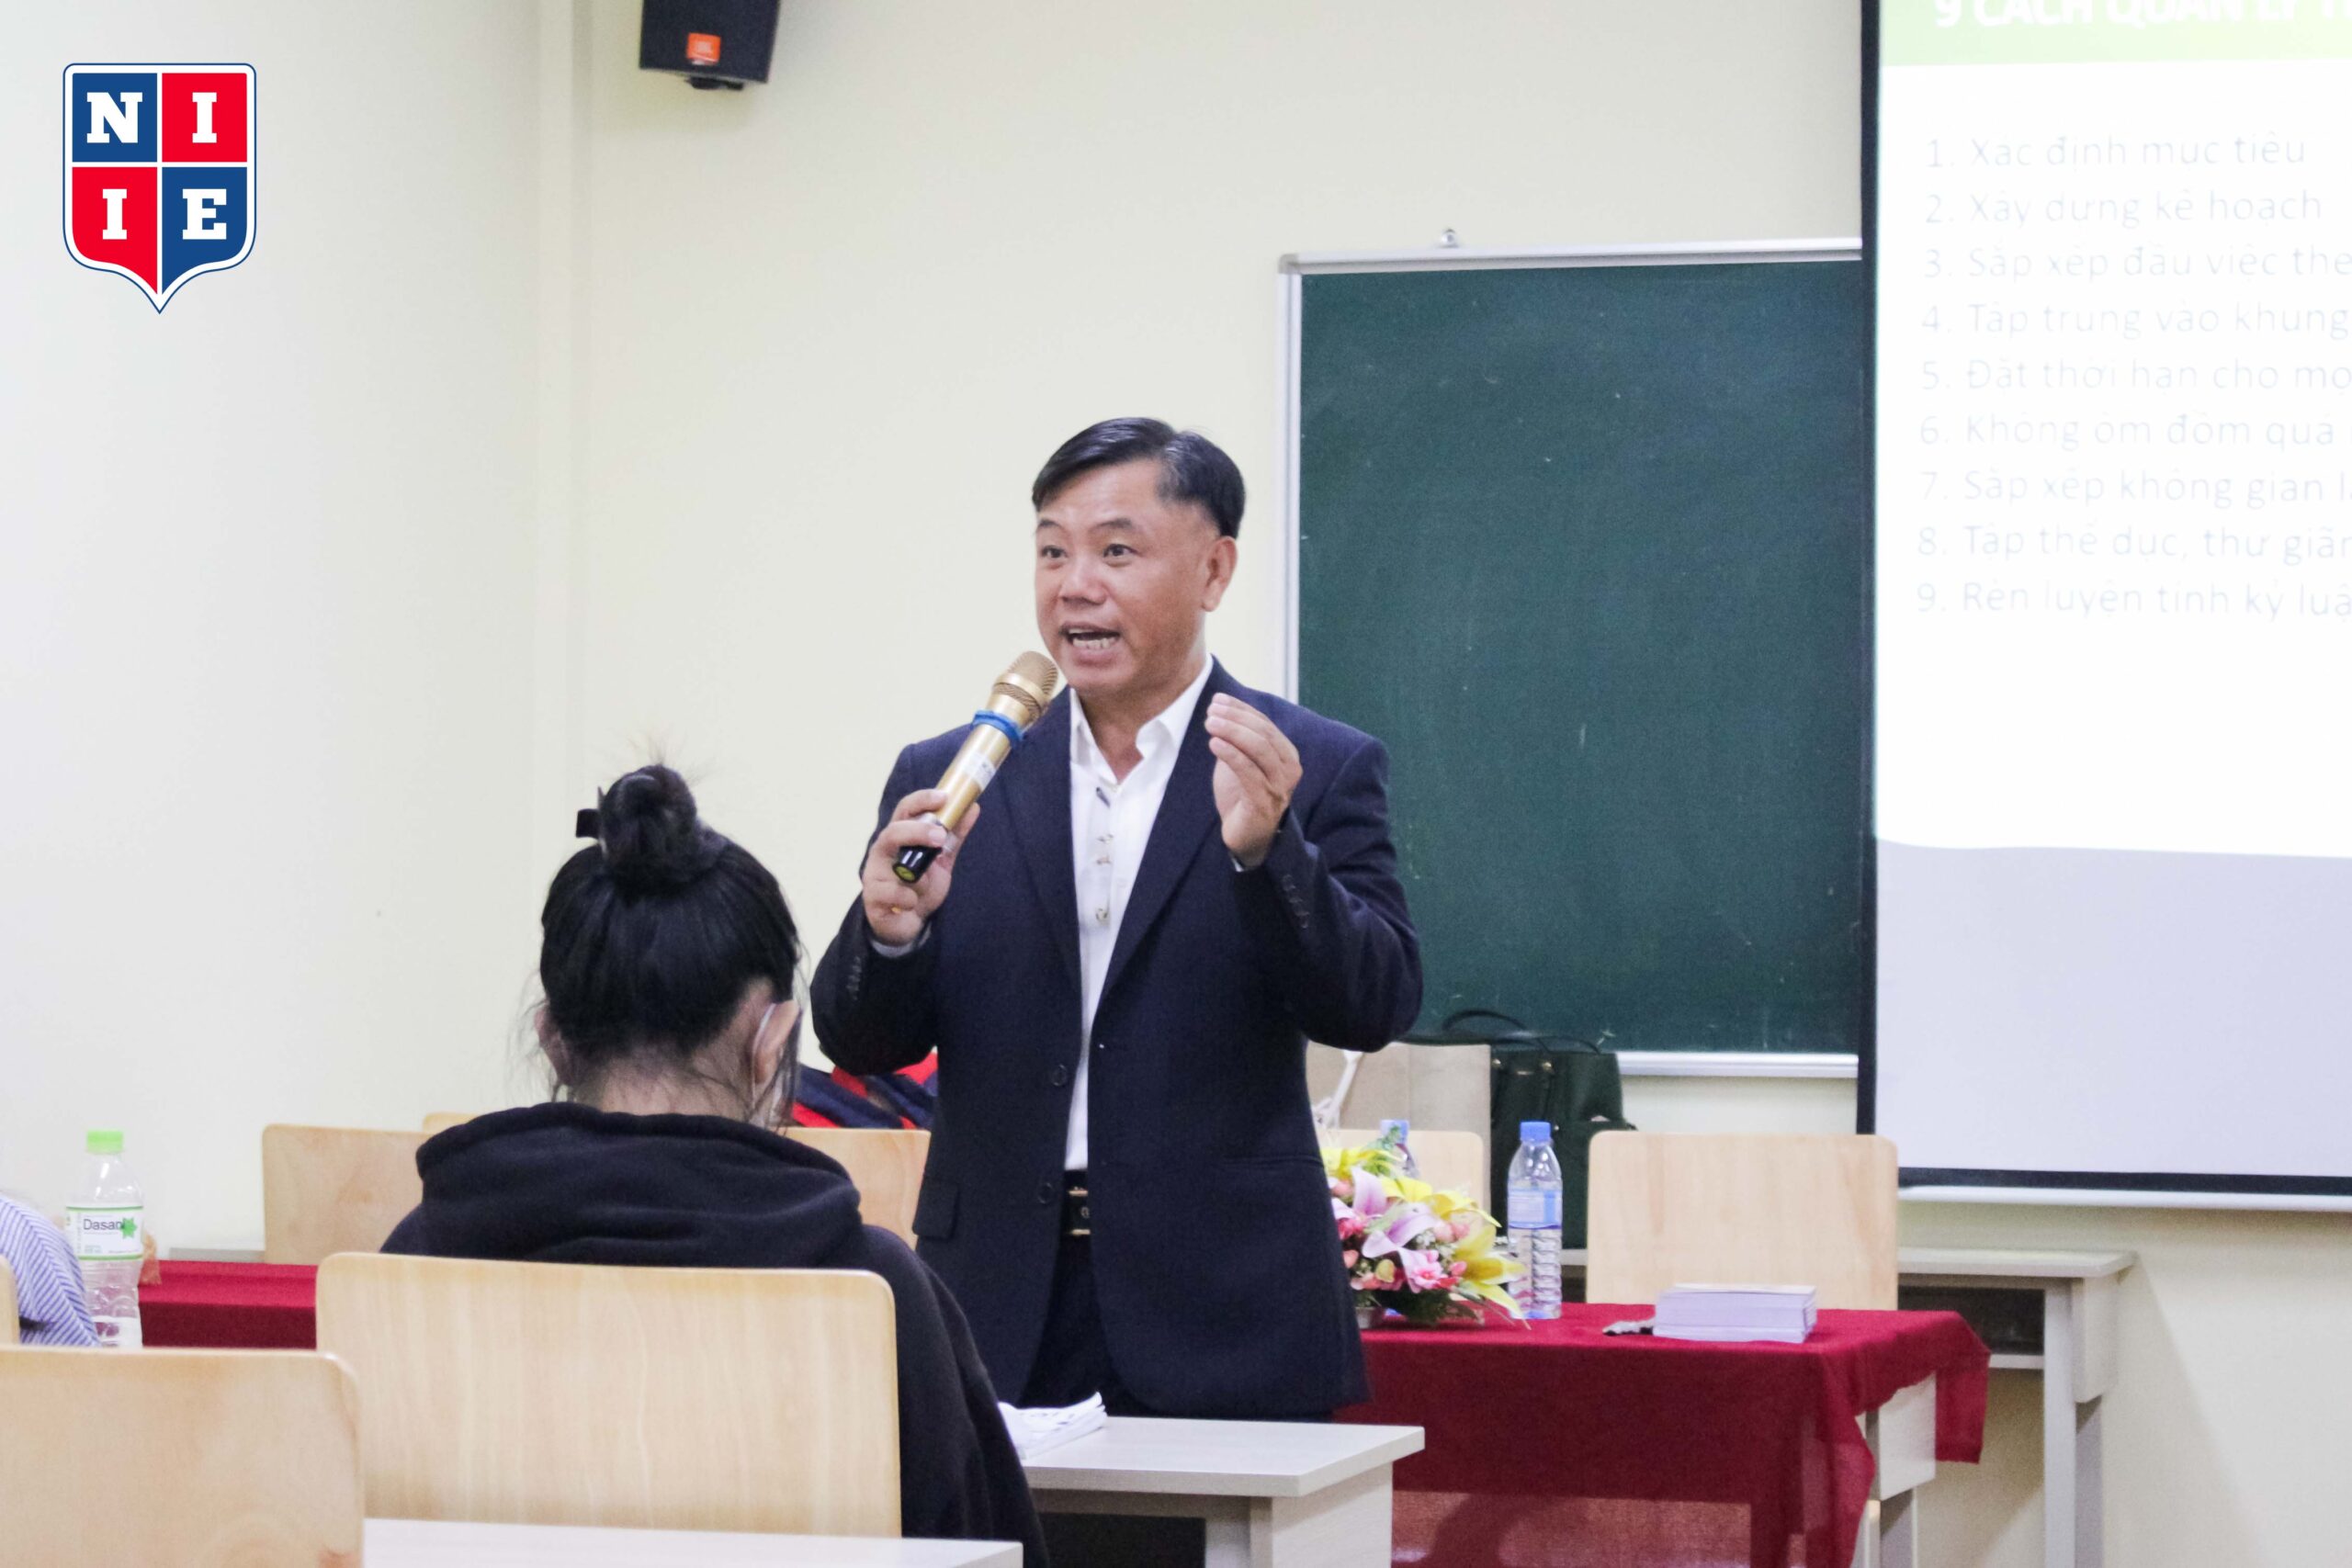 Nhờ vào khả năng quản lý thời gian hiệu quả, ThS. Trương Thành Thông đã đạt được nhiều sự thành công trong cuộc sống và công việc.